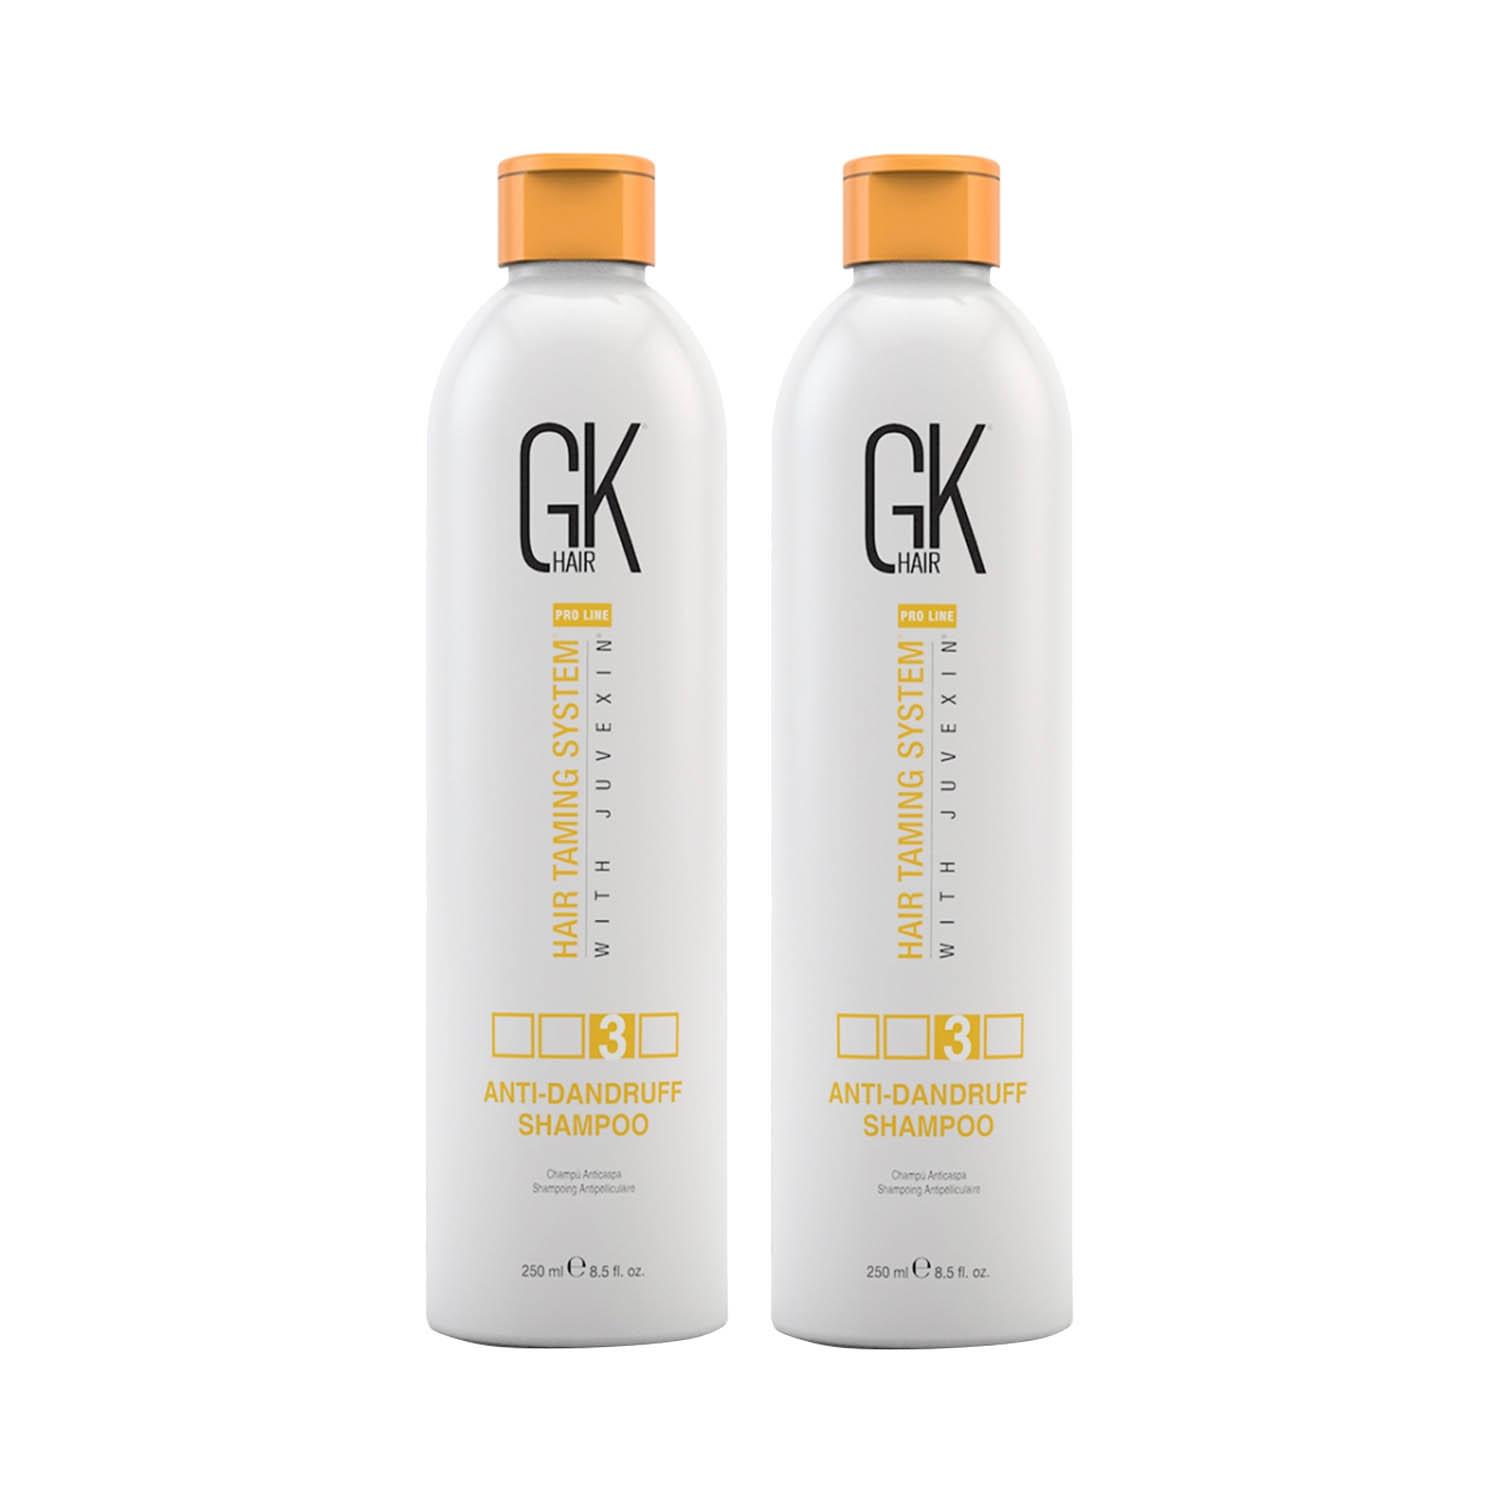 GK Hair | GK Hair Anti Dandruff Shampoo 250ml - Pack of 2